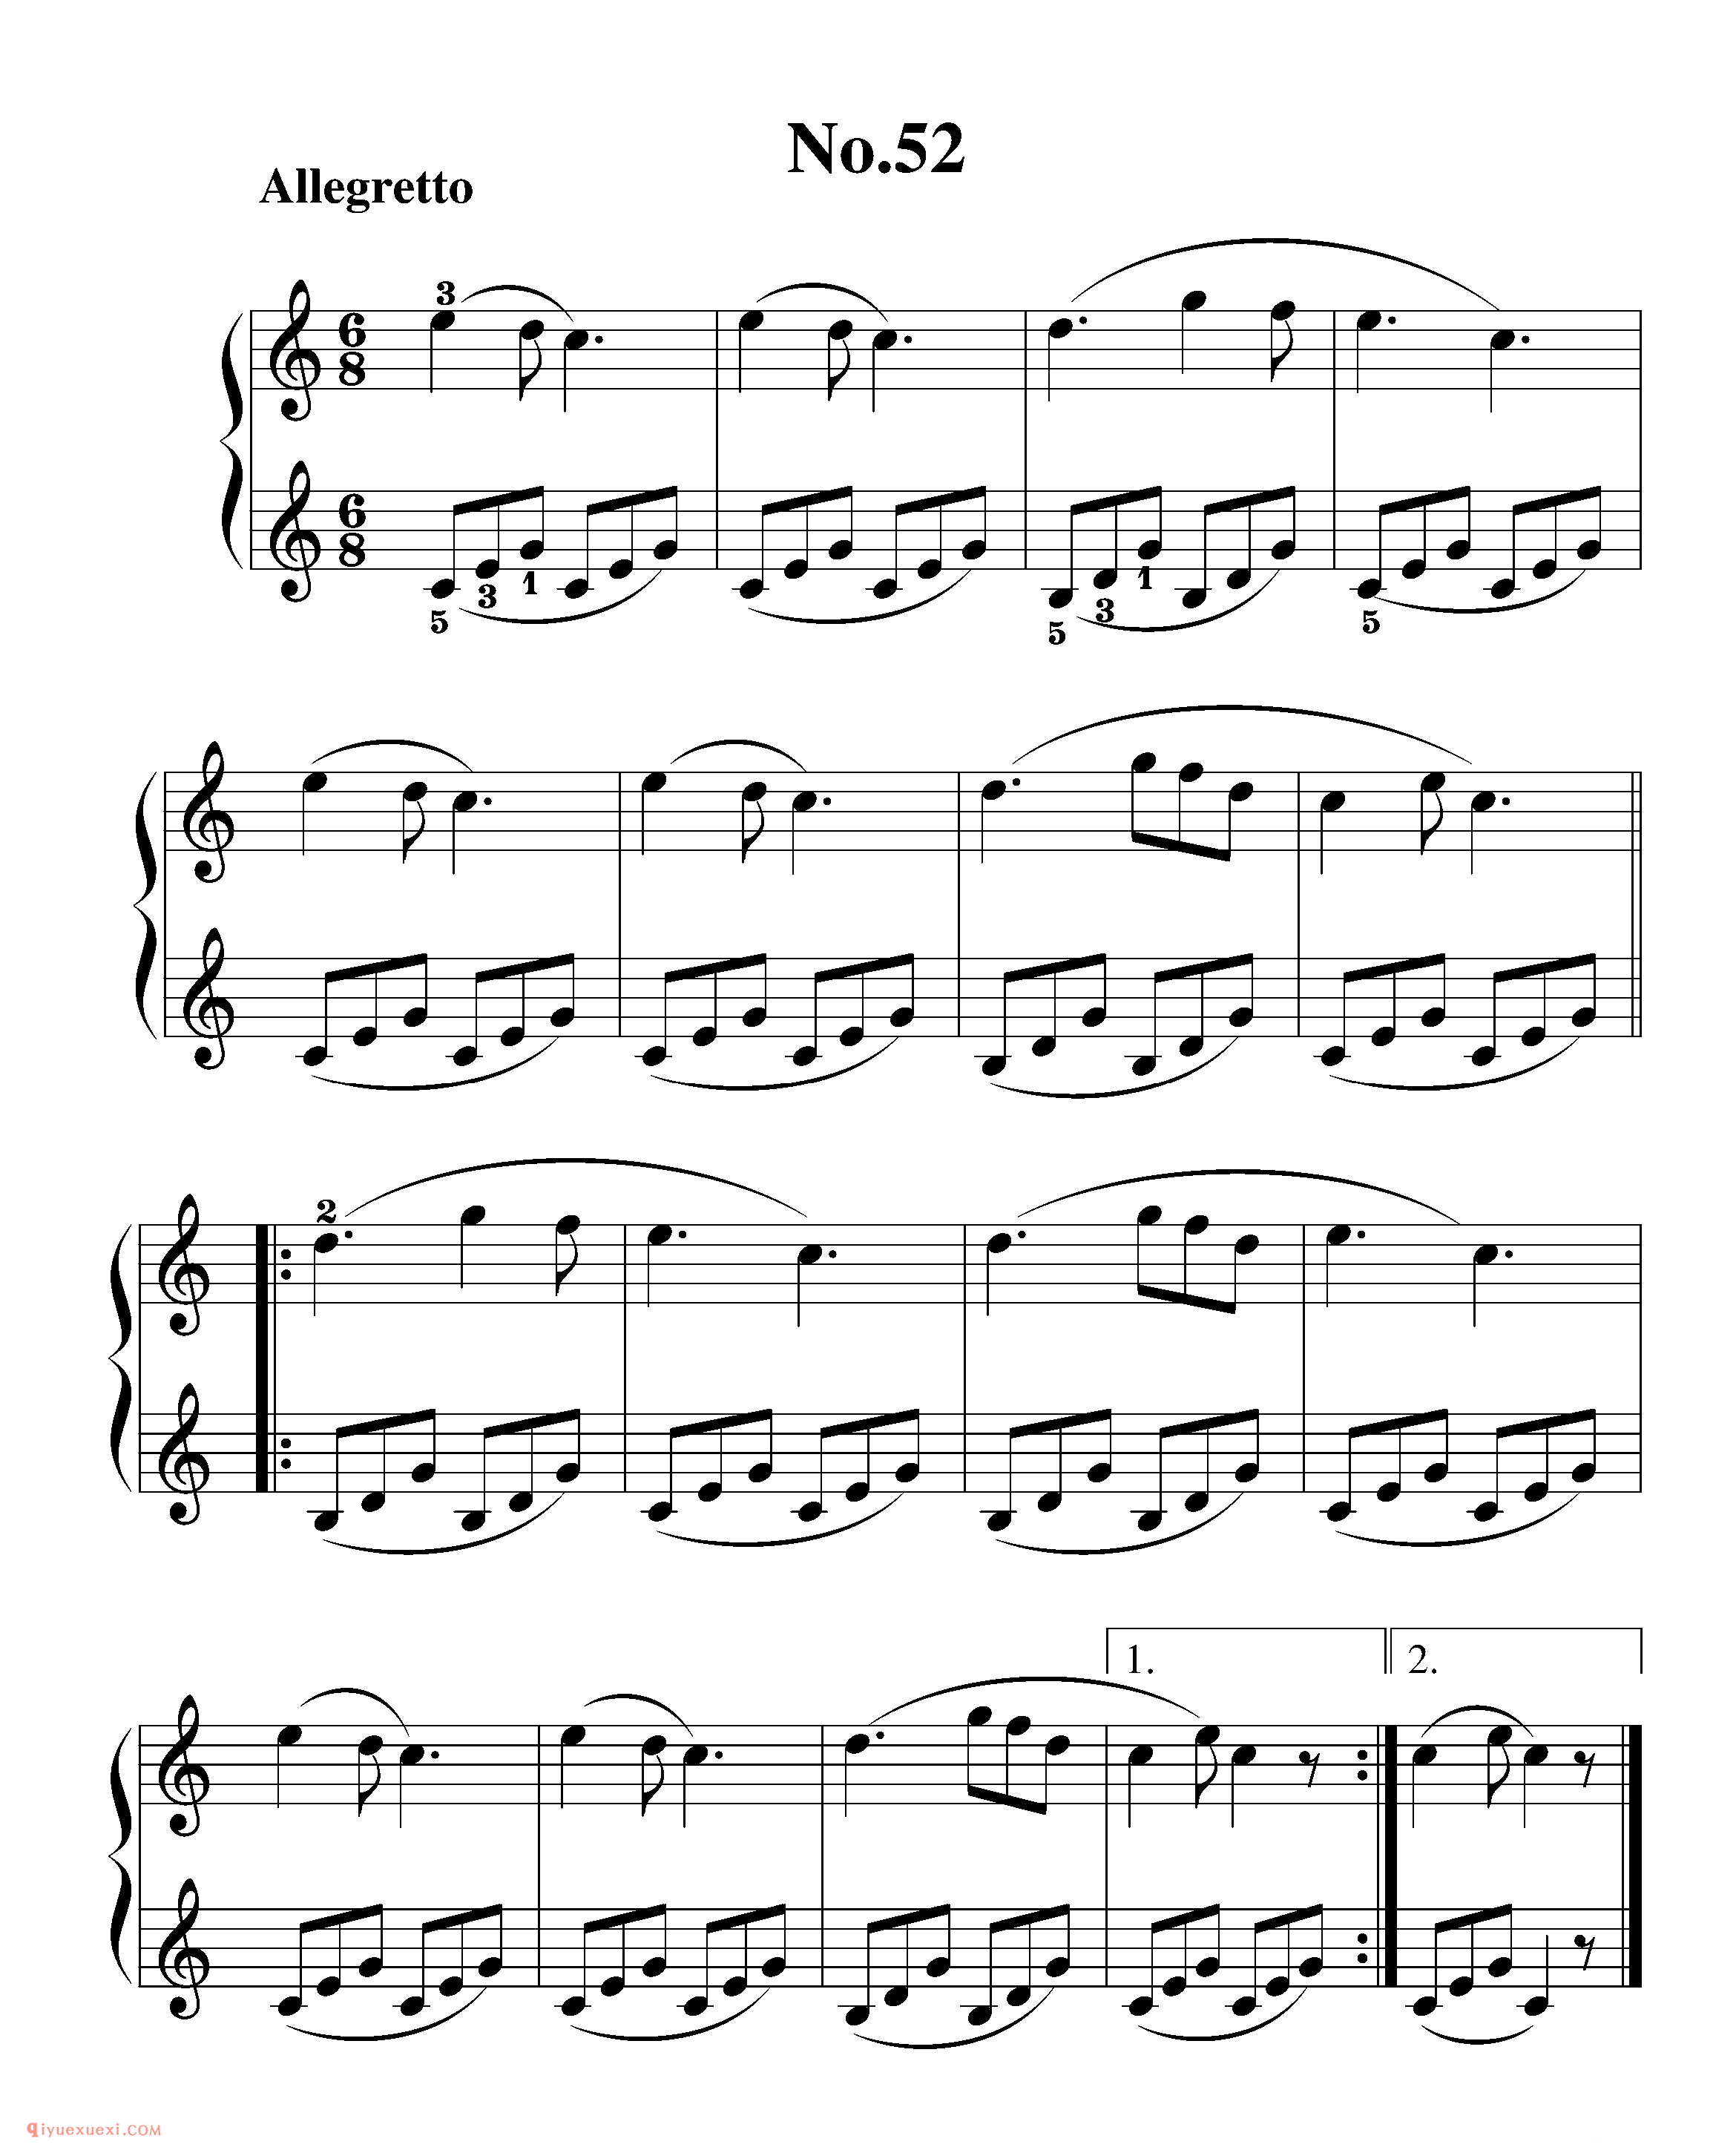 拜厄钢琴练习曲NO.52_拜尔(拜厄)钢琴基本教程练习曲第52首_五线谱